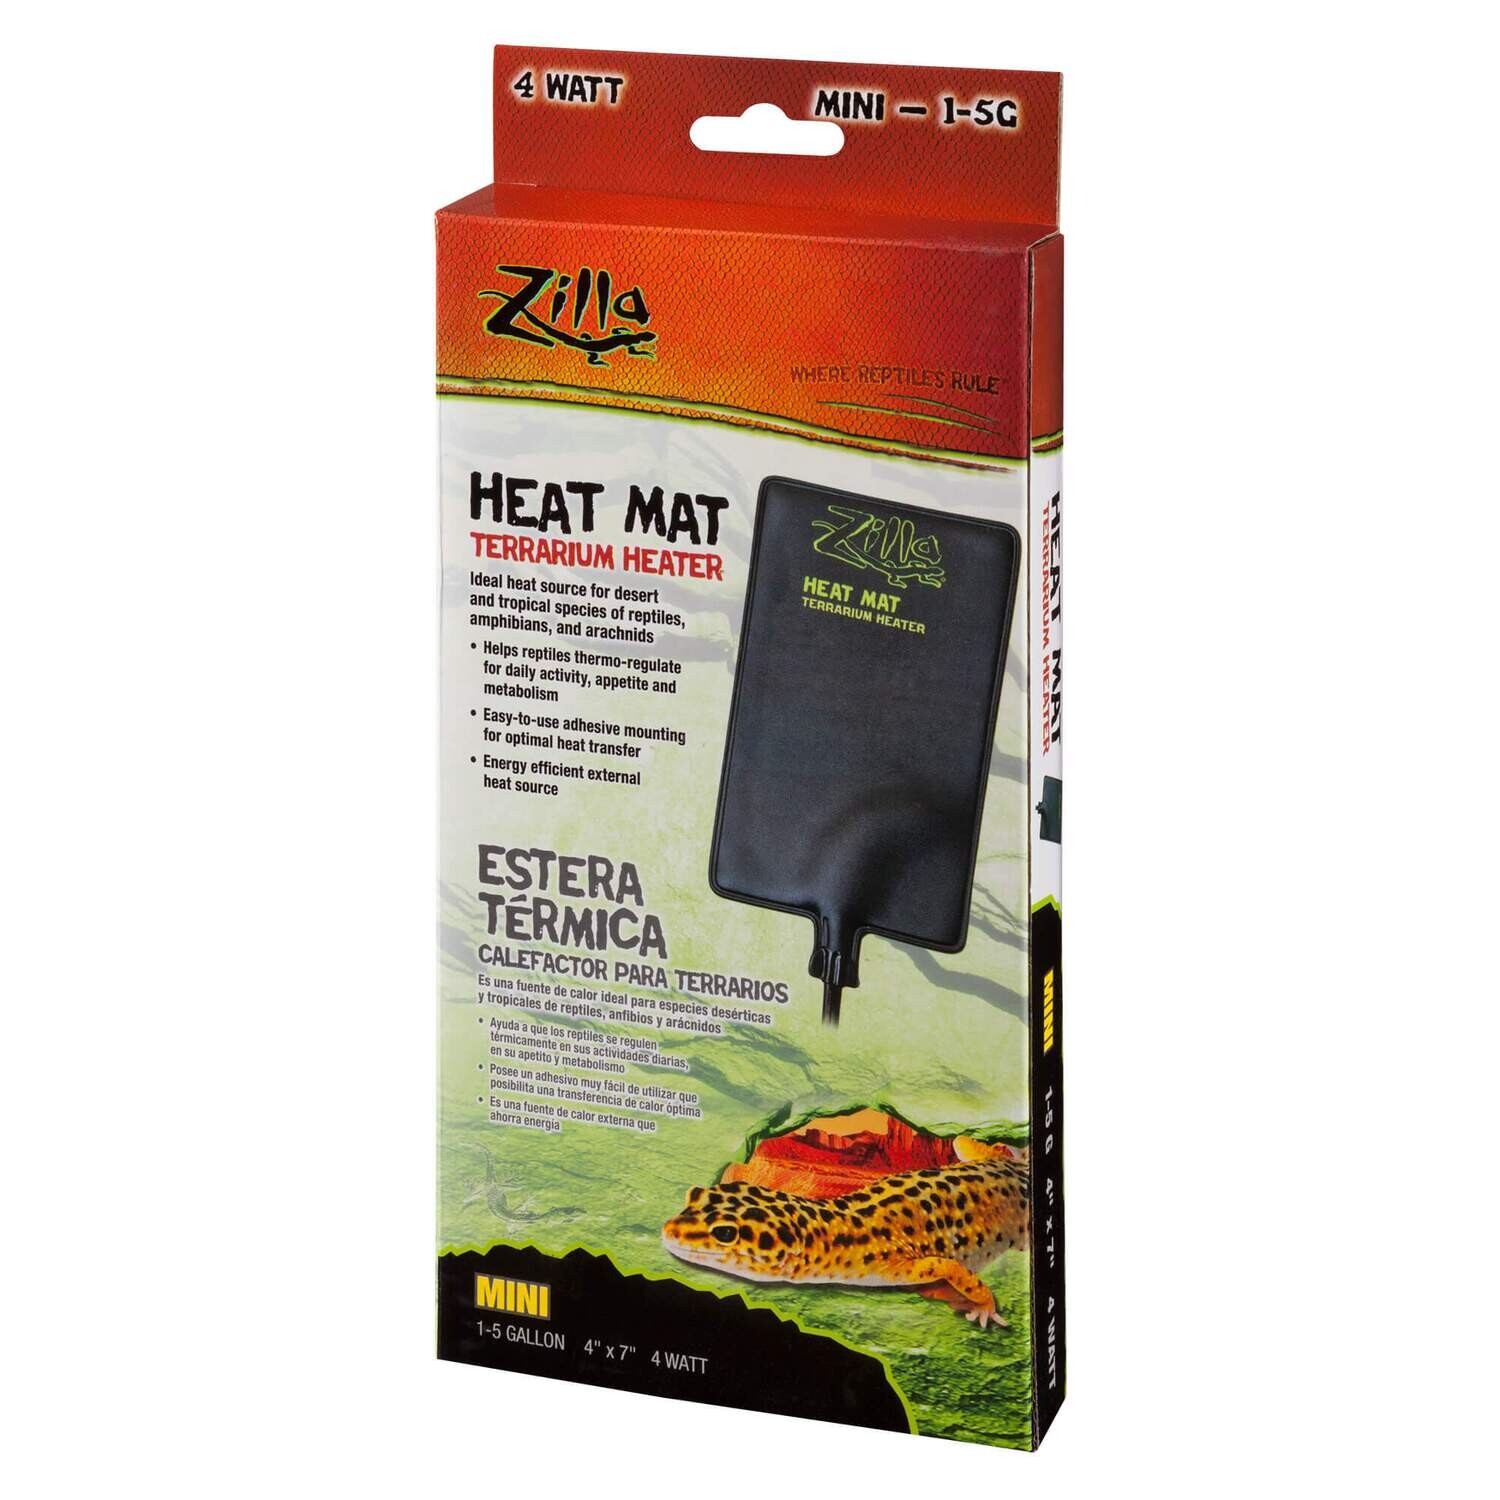 Zilla Heat Mat Mini 1-5G